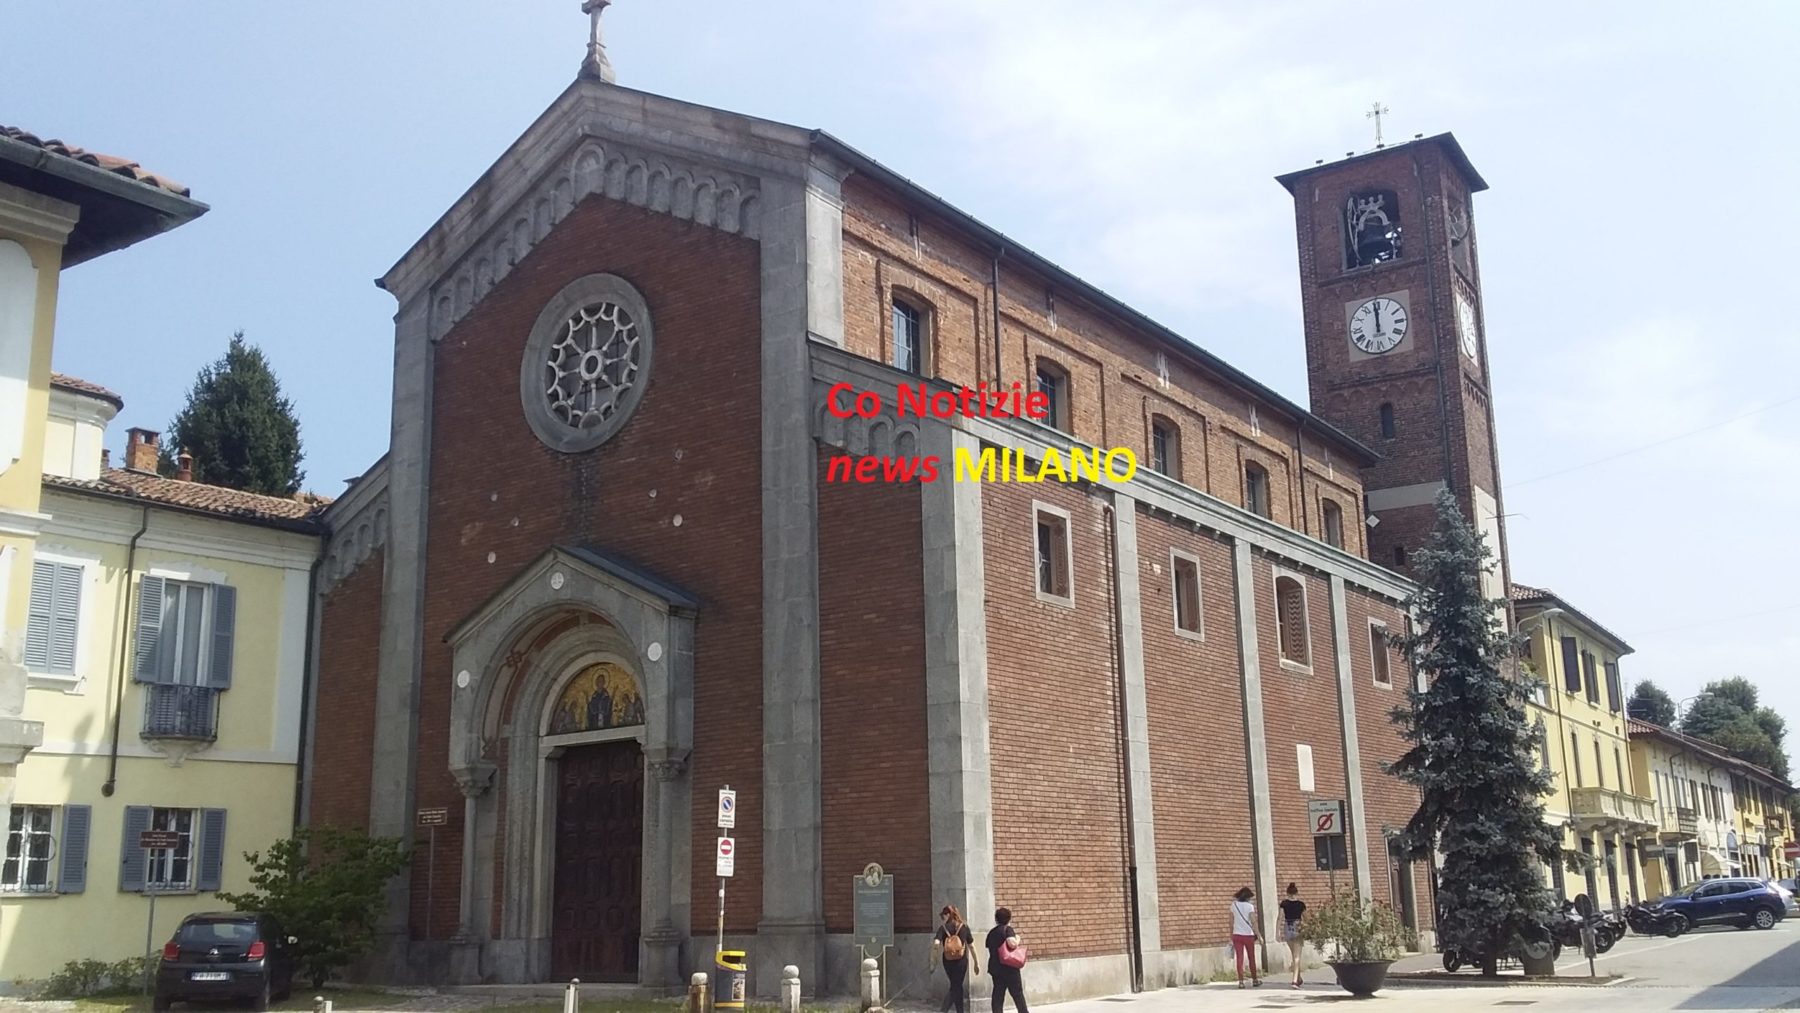 . Quattro dolci per i 4 Santi di Magenta, pro restauro Assunta e San Rocco - 28/07/2020